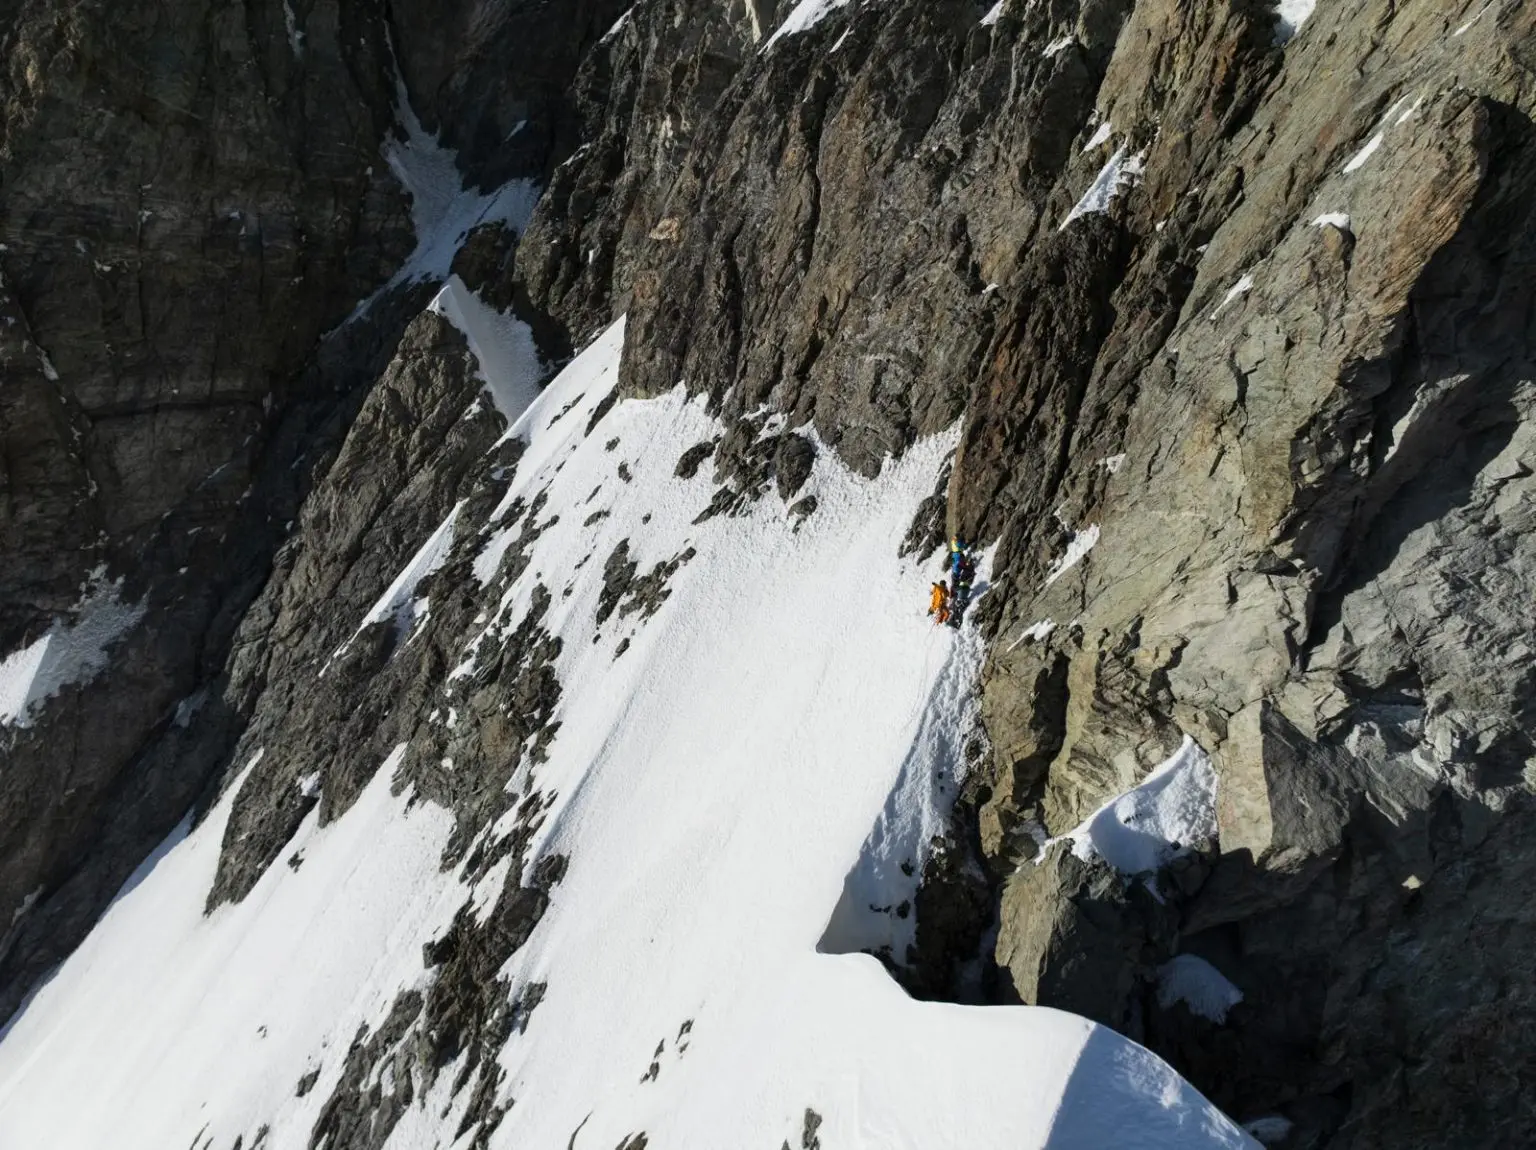 альпініст на вершині крутої сніжної ділянки, наприкинці восьмої мотузки, на величезному схилі Червіно (Маттерхорн). Фото François Cazzanelli